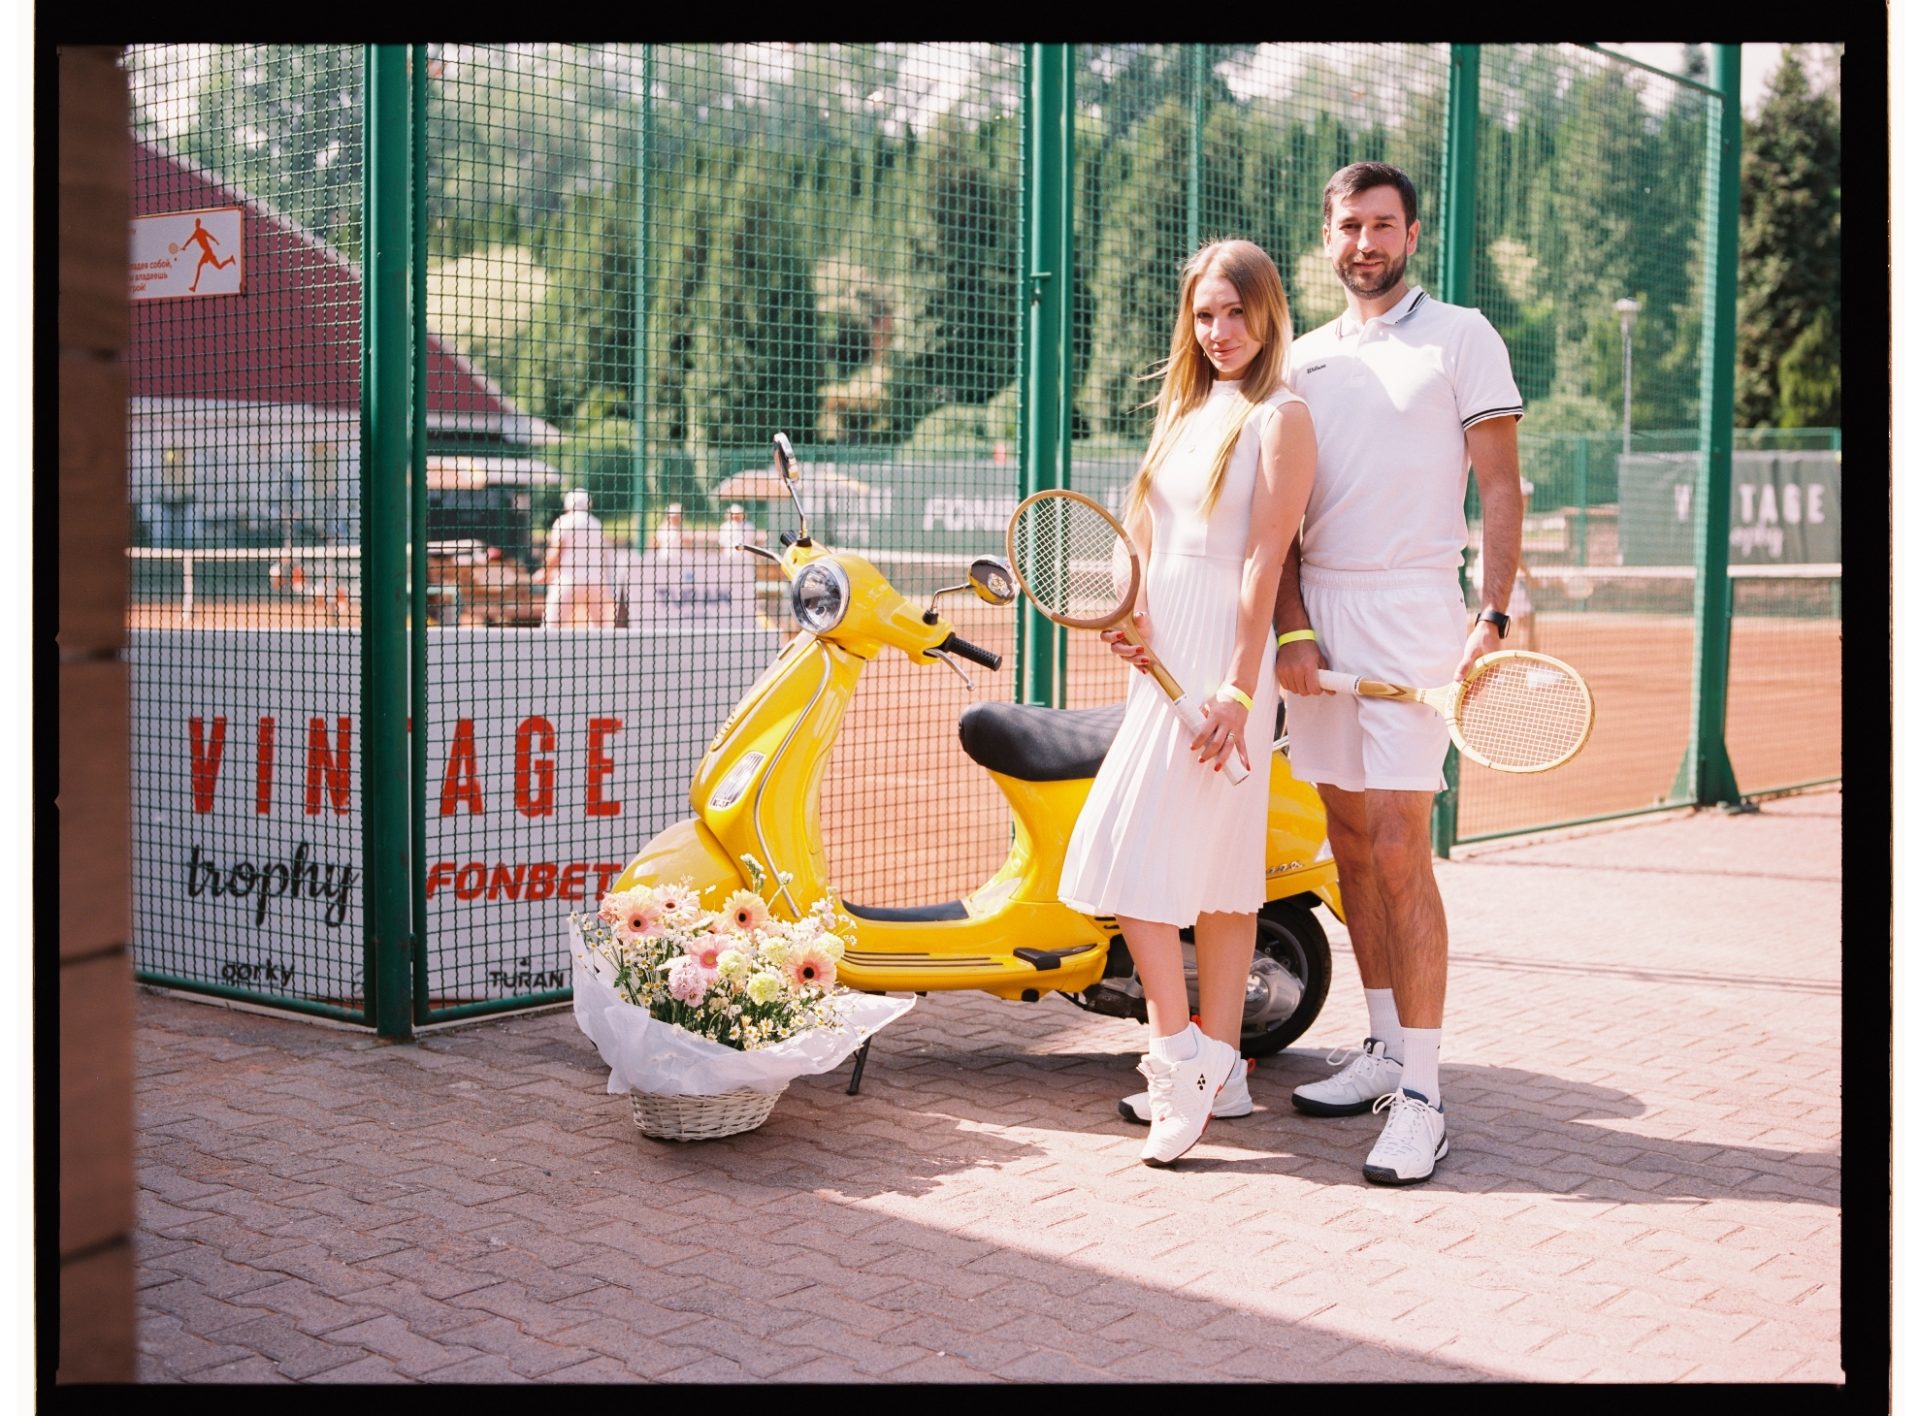 Vintage Trophy by Fonbet вернул Алматы в теннисную атмосферу 60-х годов